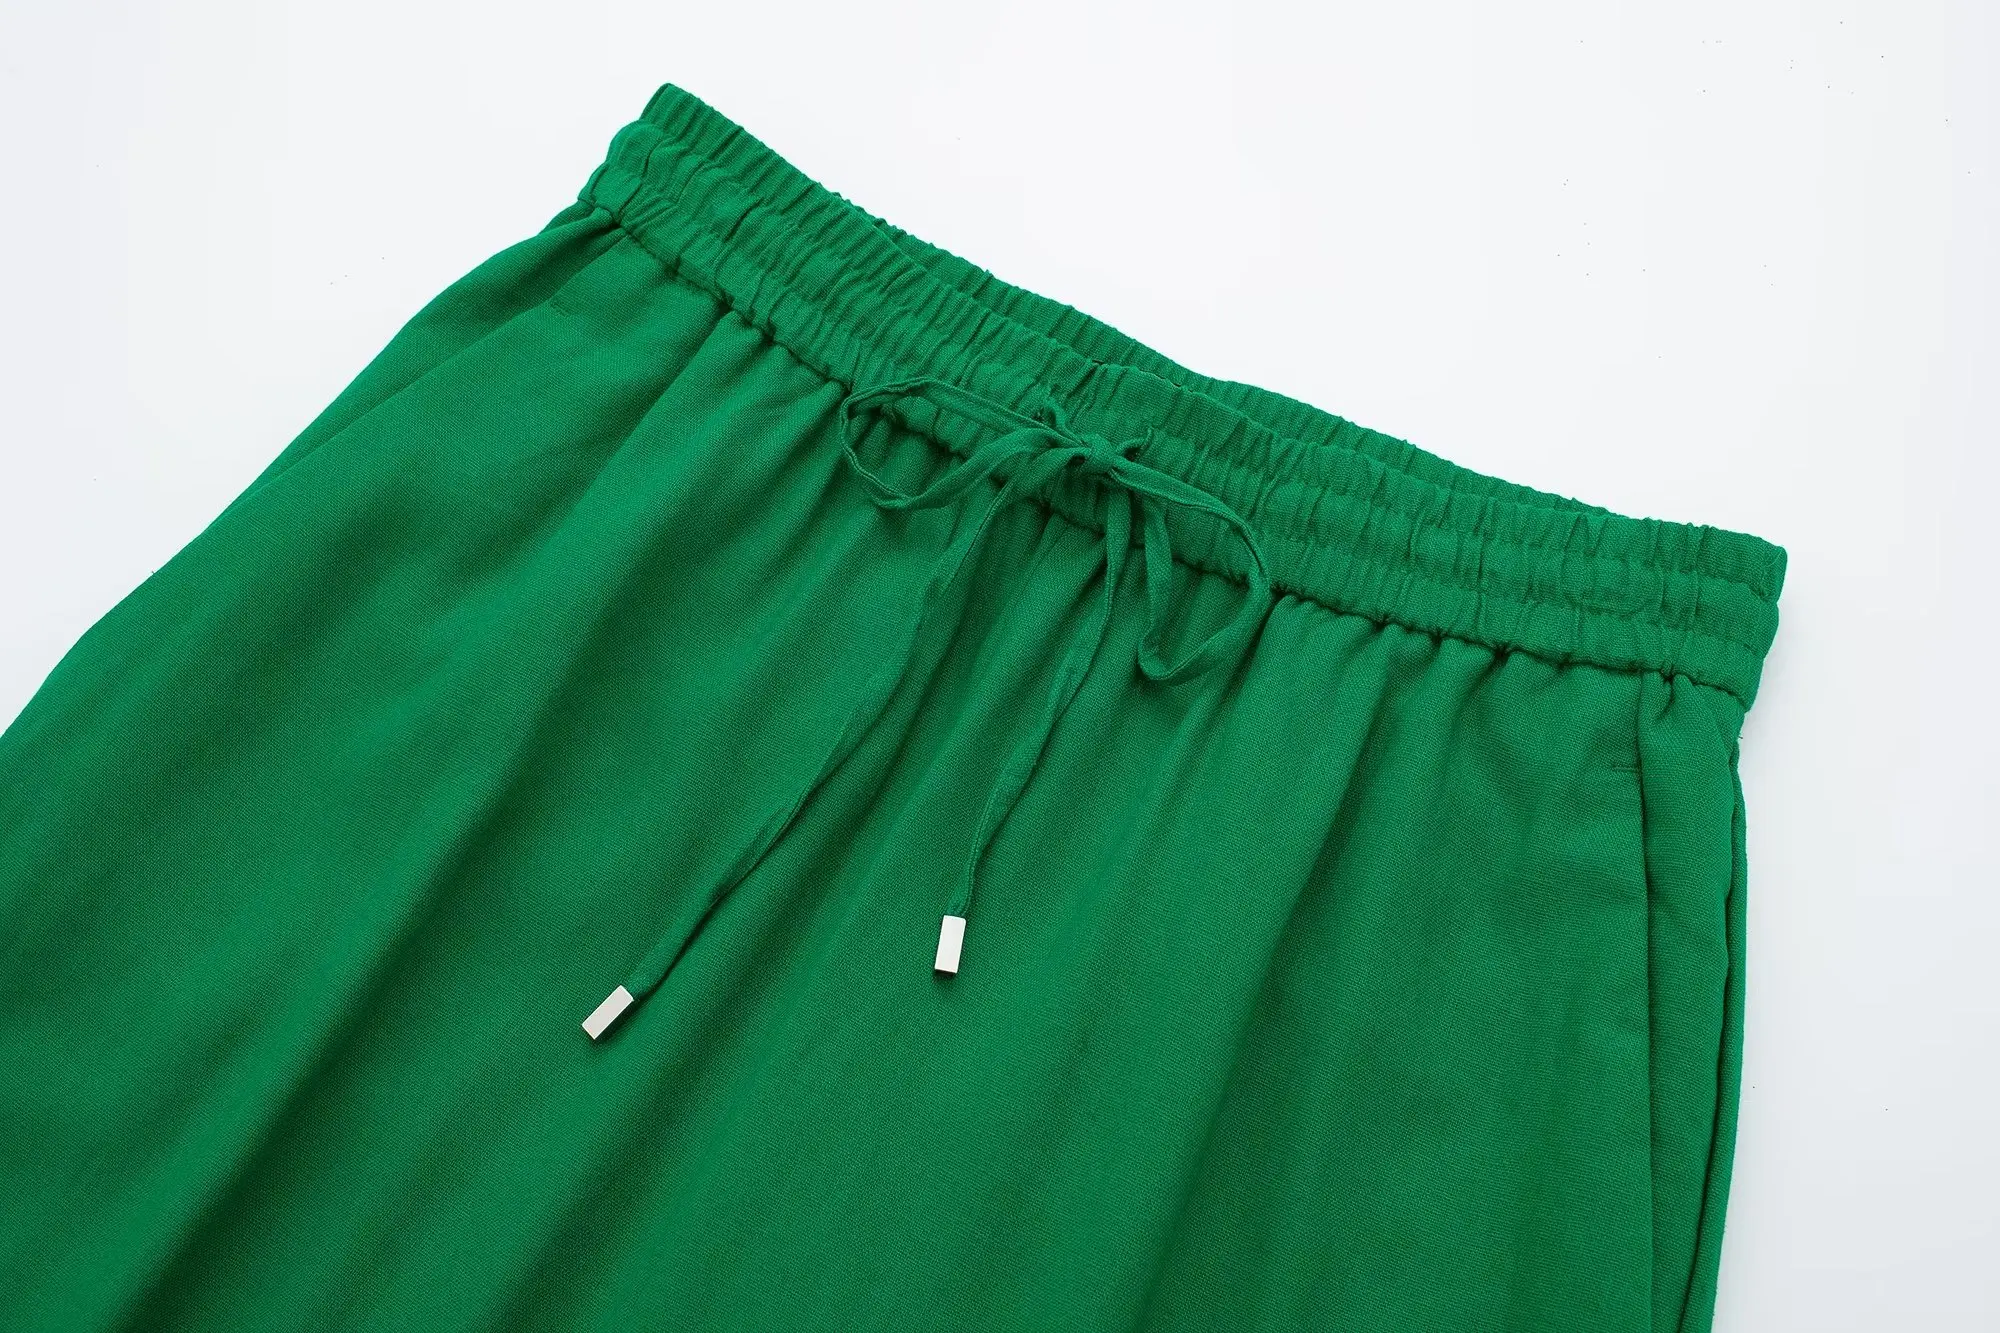 SLTNX Moda Kadın Geniş Bacak Pantolon 2023 Yaz Kadın Rahat Gevşek Dantel Up Pantolon Bayanlar Şık Zarif Düşük Bel Pantolon Yeni